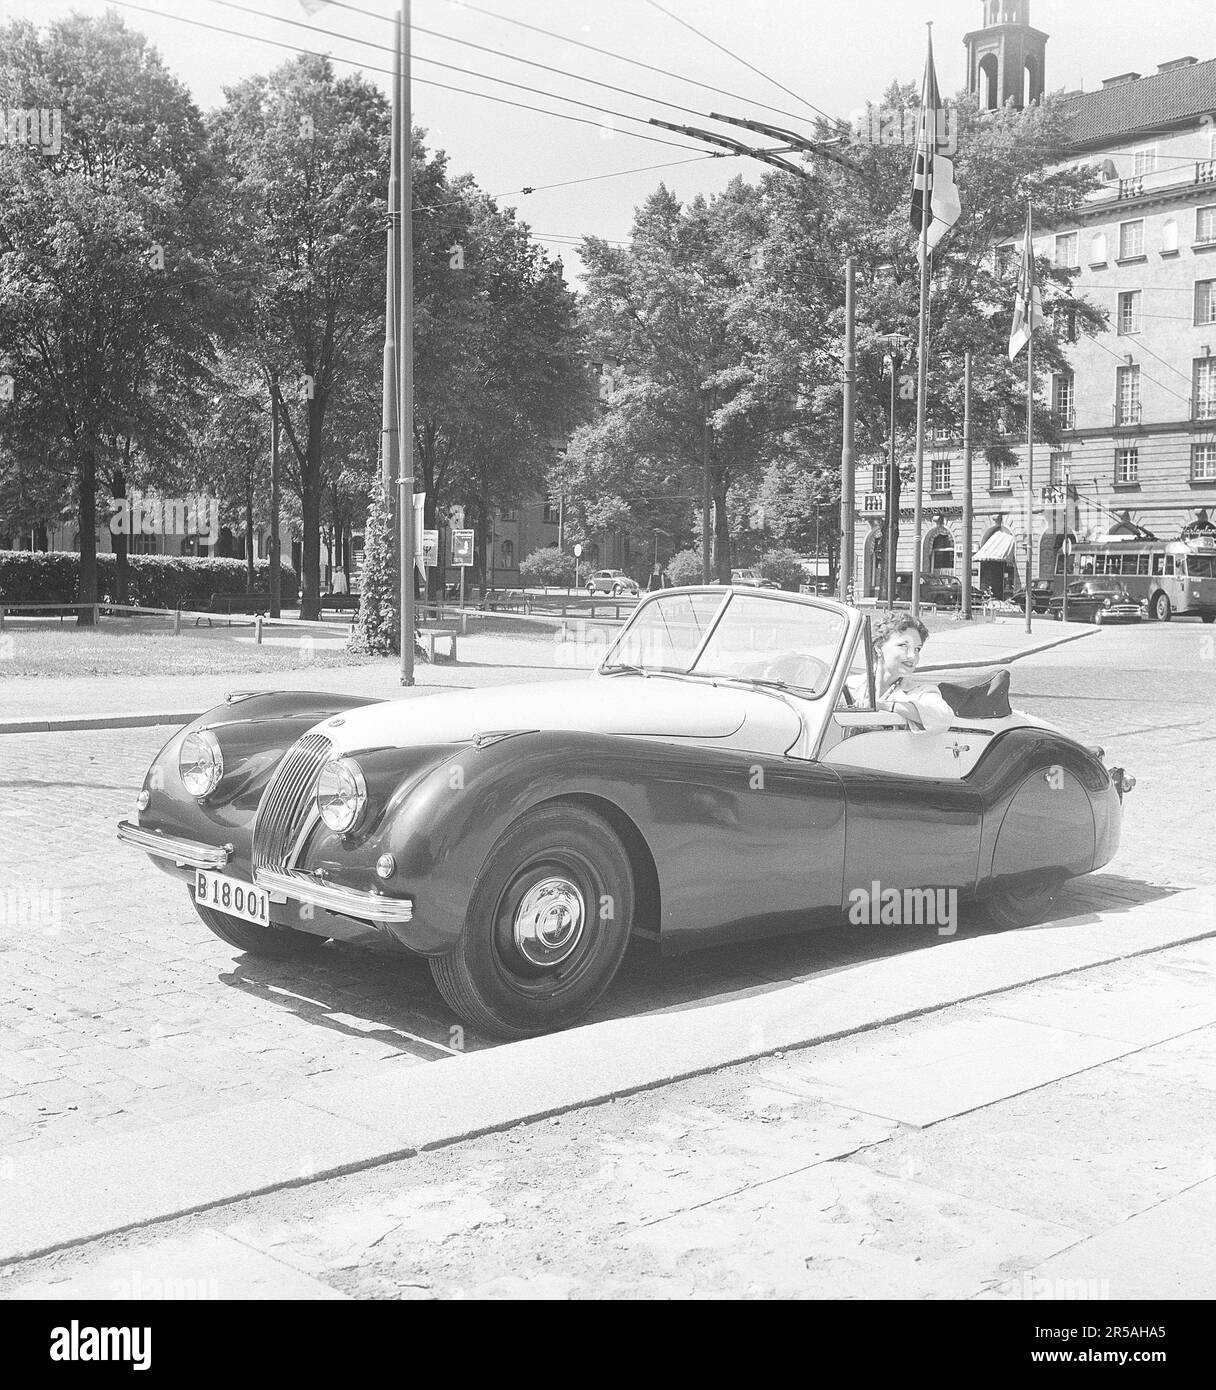 Guida in 1950s. Una giovane donna in una Jaguar XK120 aperta e convertibile. Una sportscar britannica che è stato considerato avere un design futuristico. I numeri 120 indicano la velocità massima della vettura, 120 mph/193 km/h. La vettura era a due posti con una chasse in alluminio. E 'stato realizzato in un totale di 12078 auto. Svezia 1953. rif BL108-8 Foto Stock